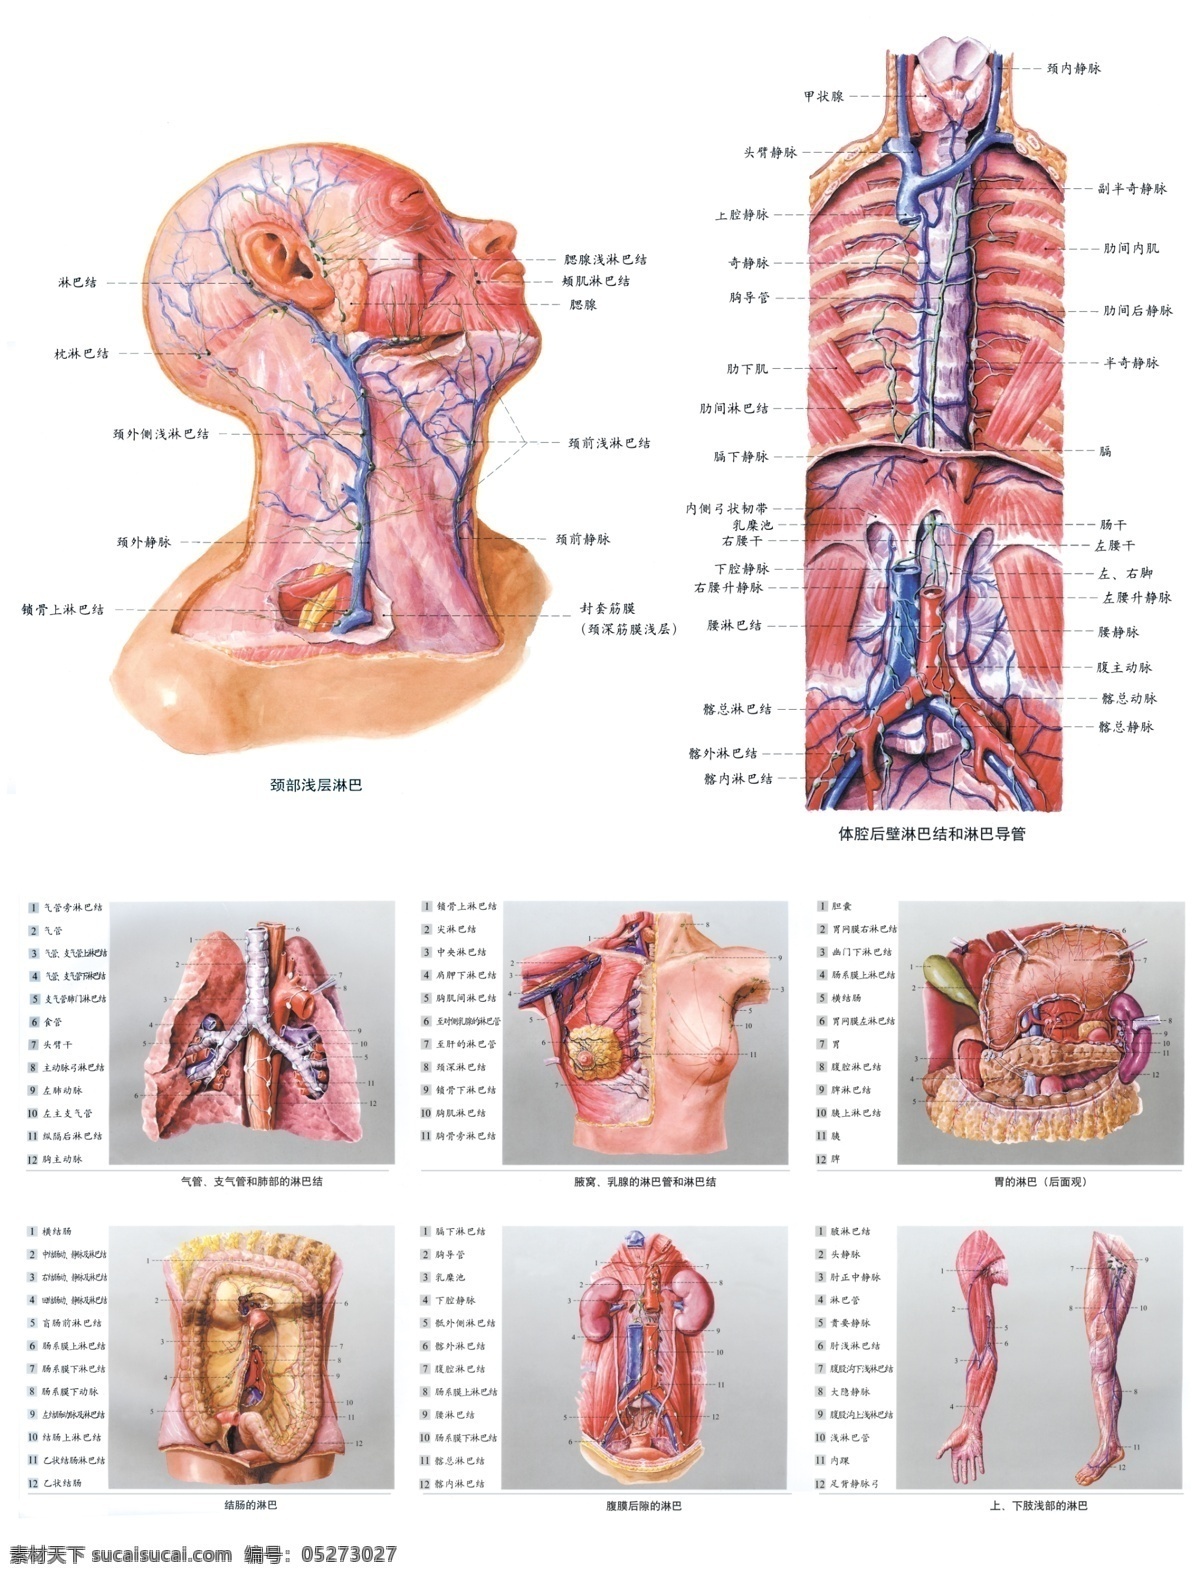 广告设计模板 经络图 人体解剖图 人体内脏图 源文件 展板模板 中医 人体 解剖 图 模板下载 内脏分部图 人体构造图 医学图 医学研究图 海报 其他海报设计